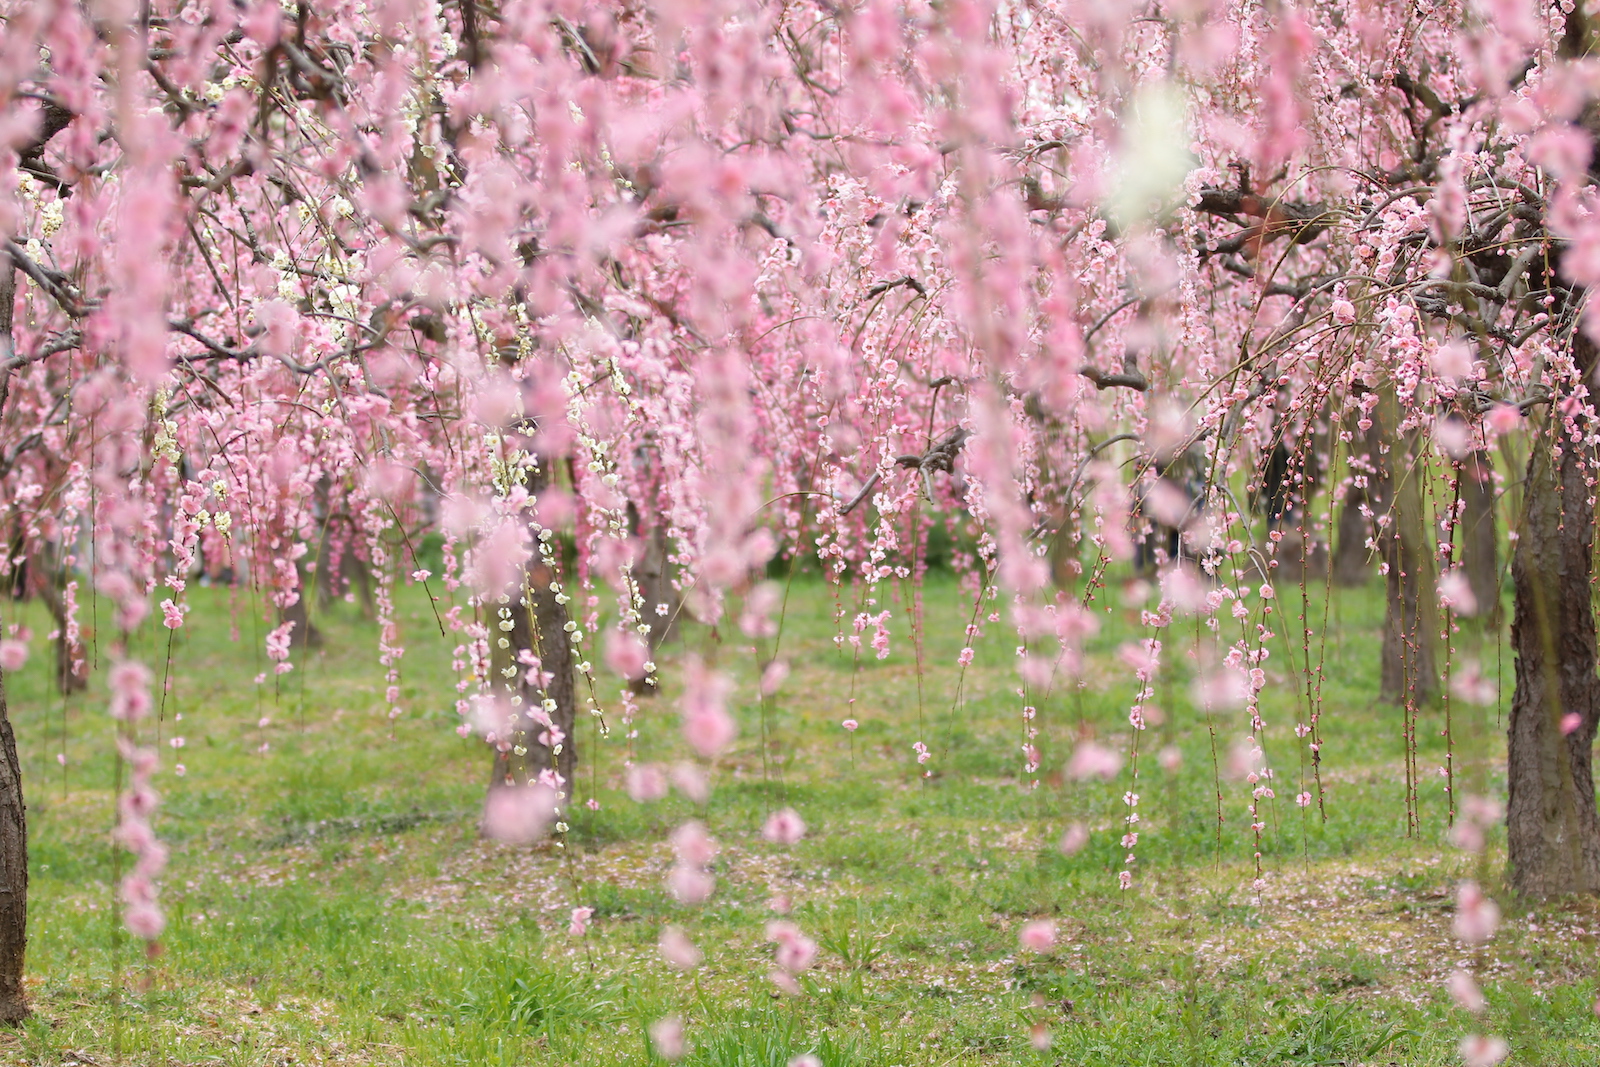 名古屋市天白区 春の色彩と活気に魅了される 名古屋市農業センター Delaふぁーむ へ癒しを求めて 土庄雄平 Yahoo Japan クリエイターズプログラム